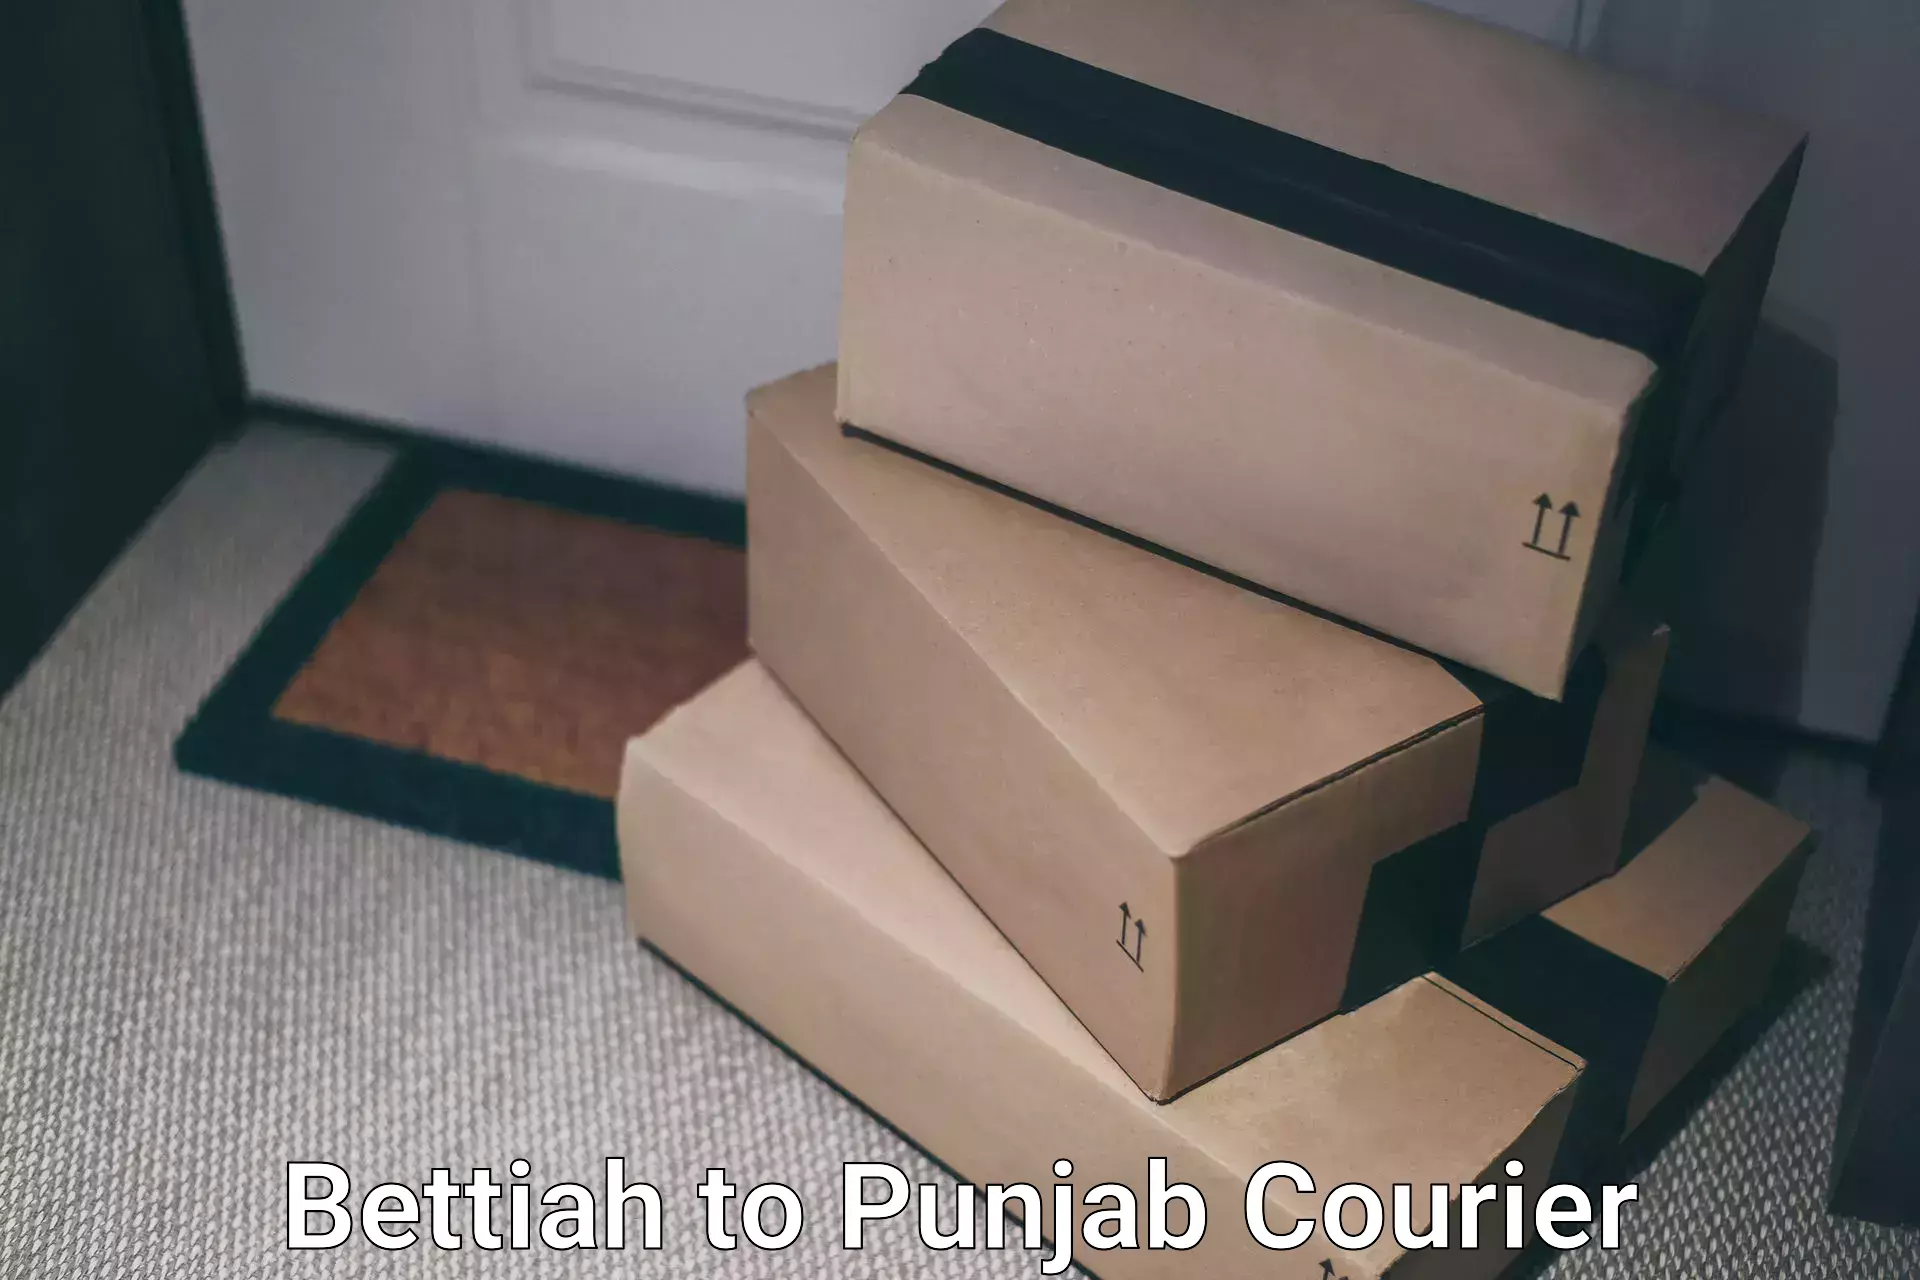 Efficient cargo handling Bettiah to Punjab